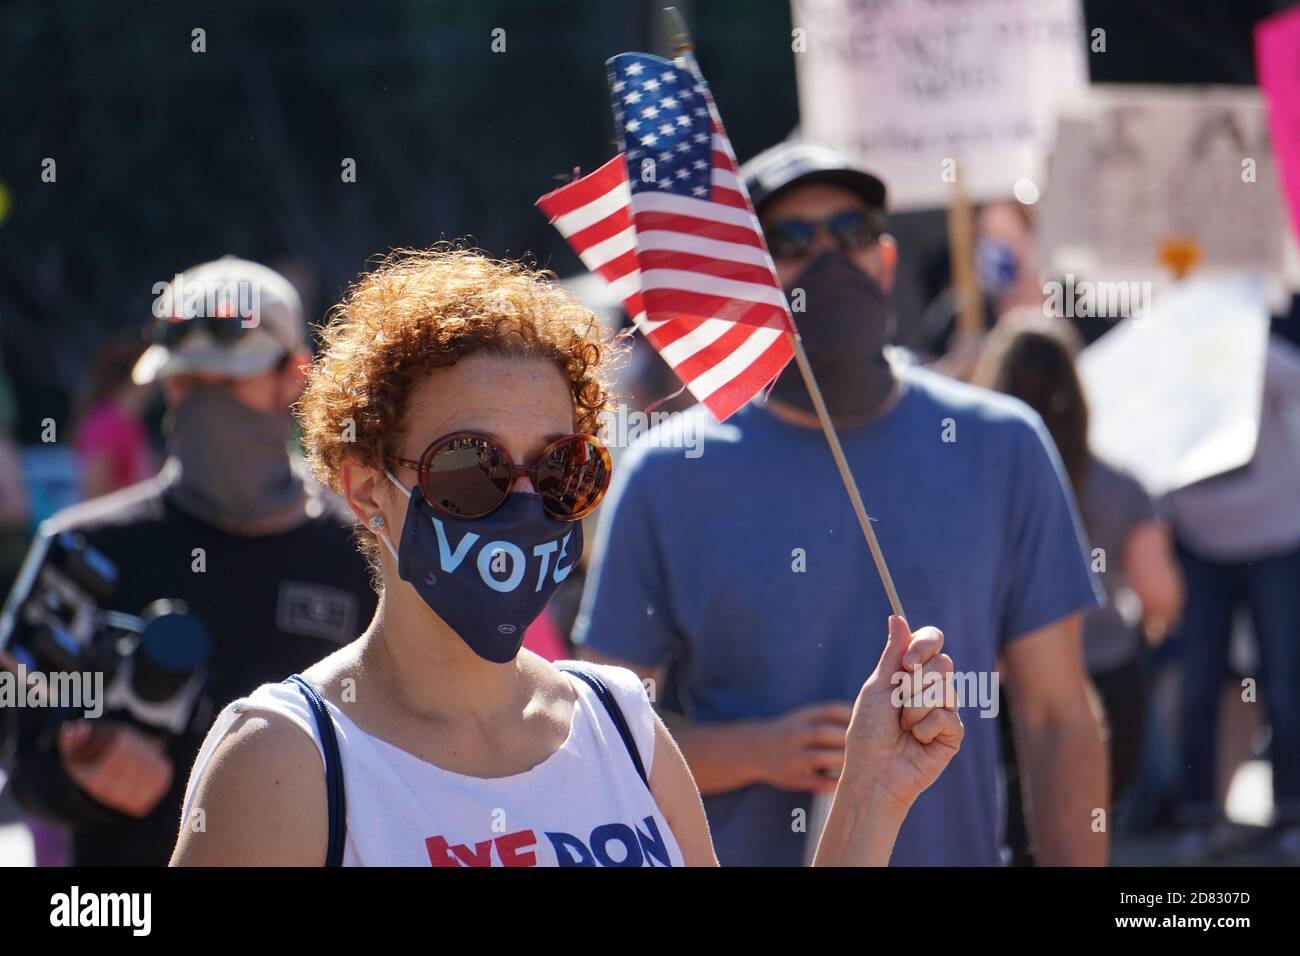 17 ottobre 2020. San Francisco - la marcia delle donne. Il protester indossa una maschera di voto e detiene una bandiera americana poco prima delle elezioni USA del 2020. California. Foto Stock